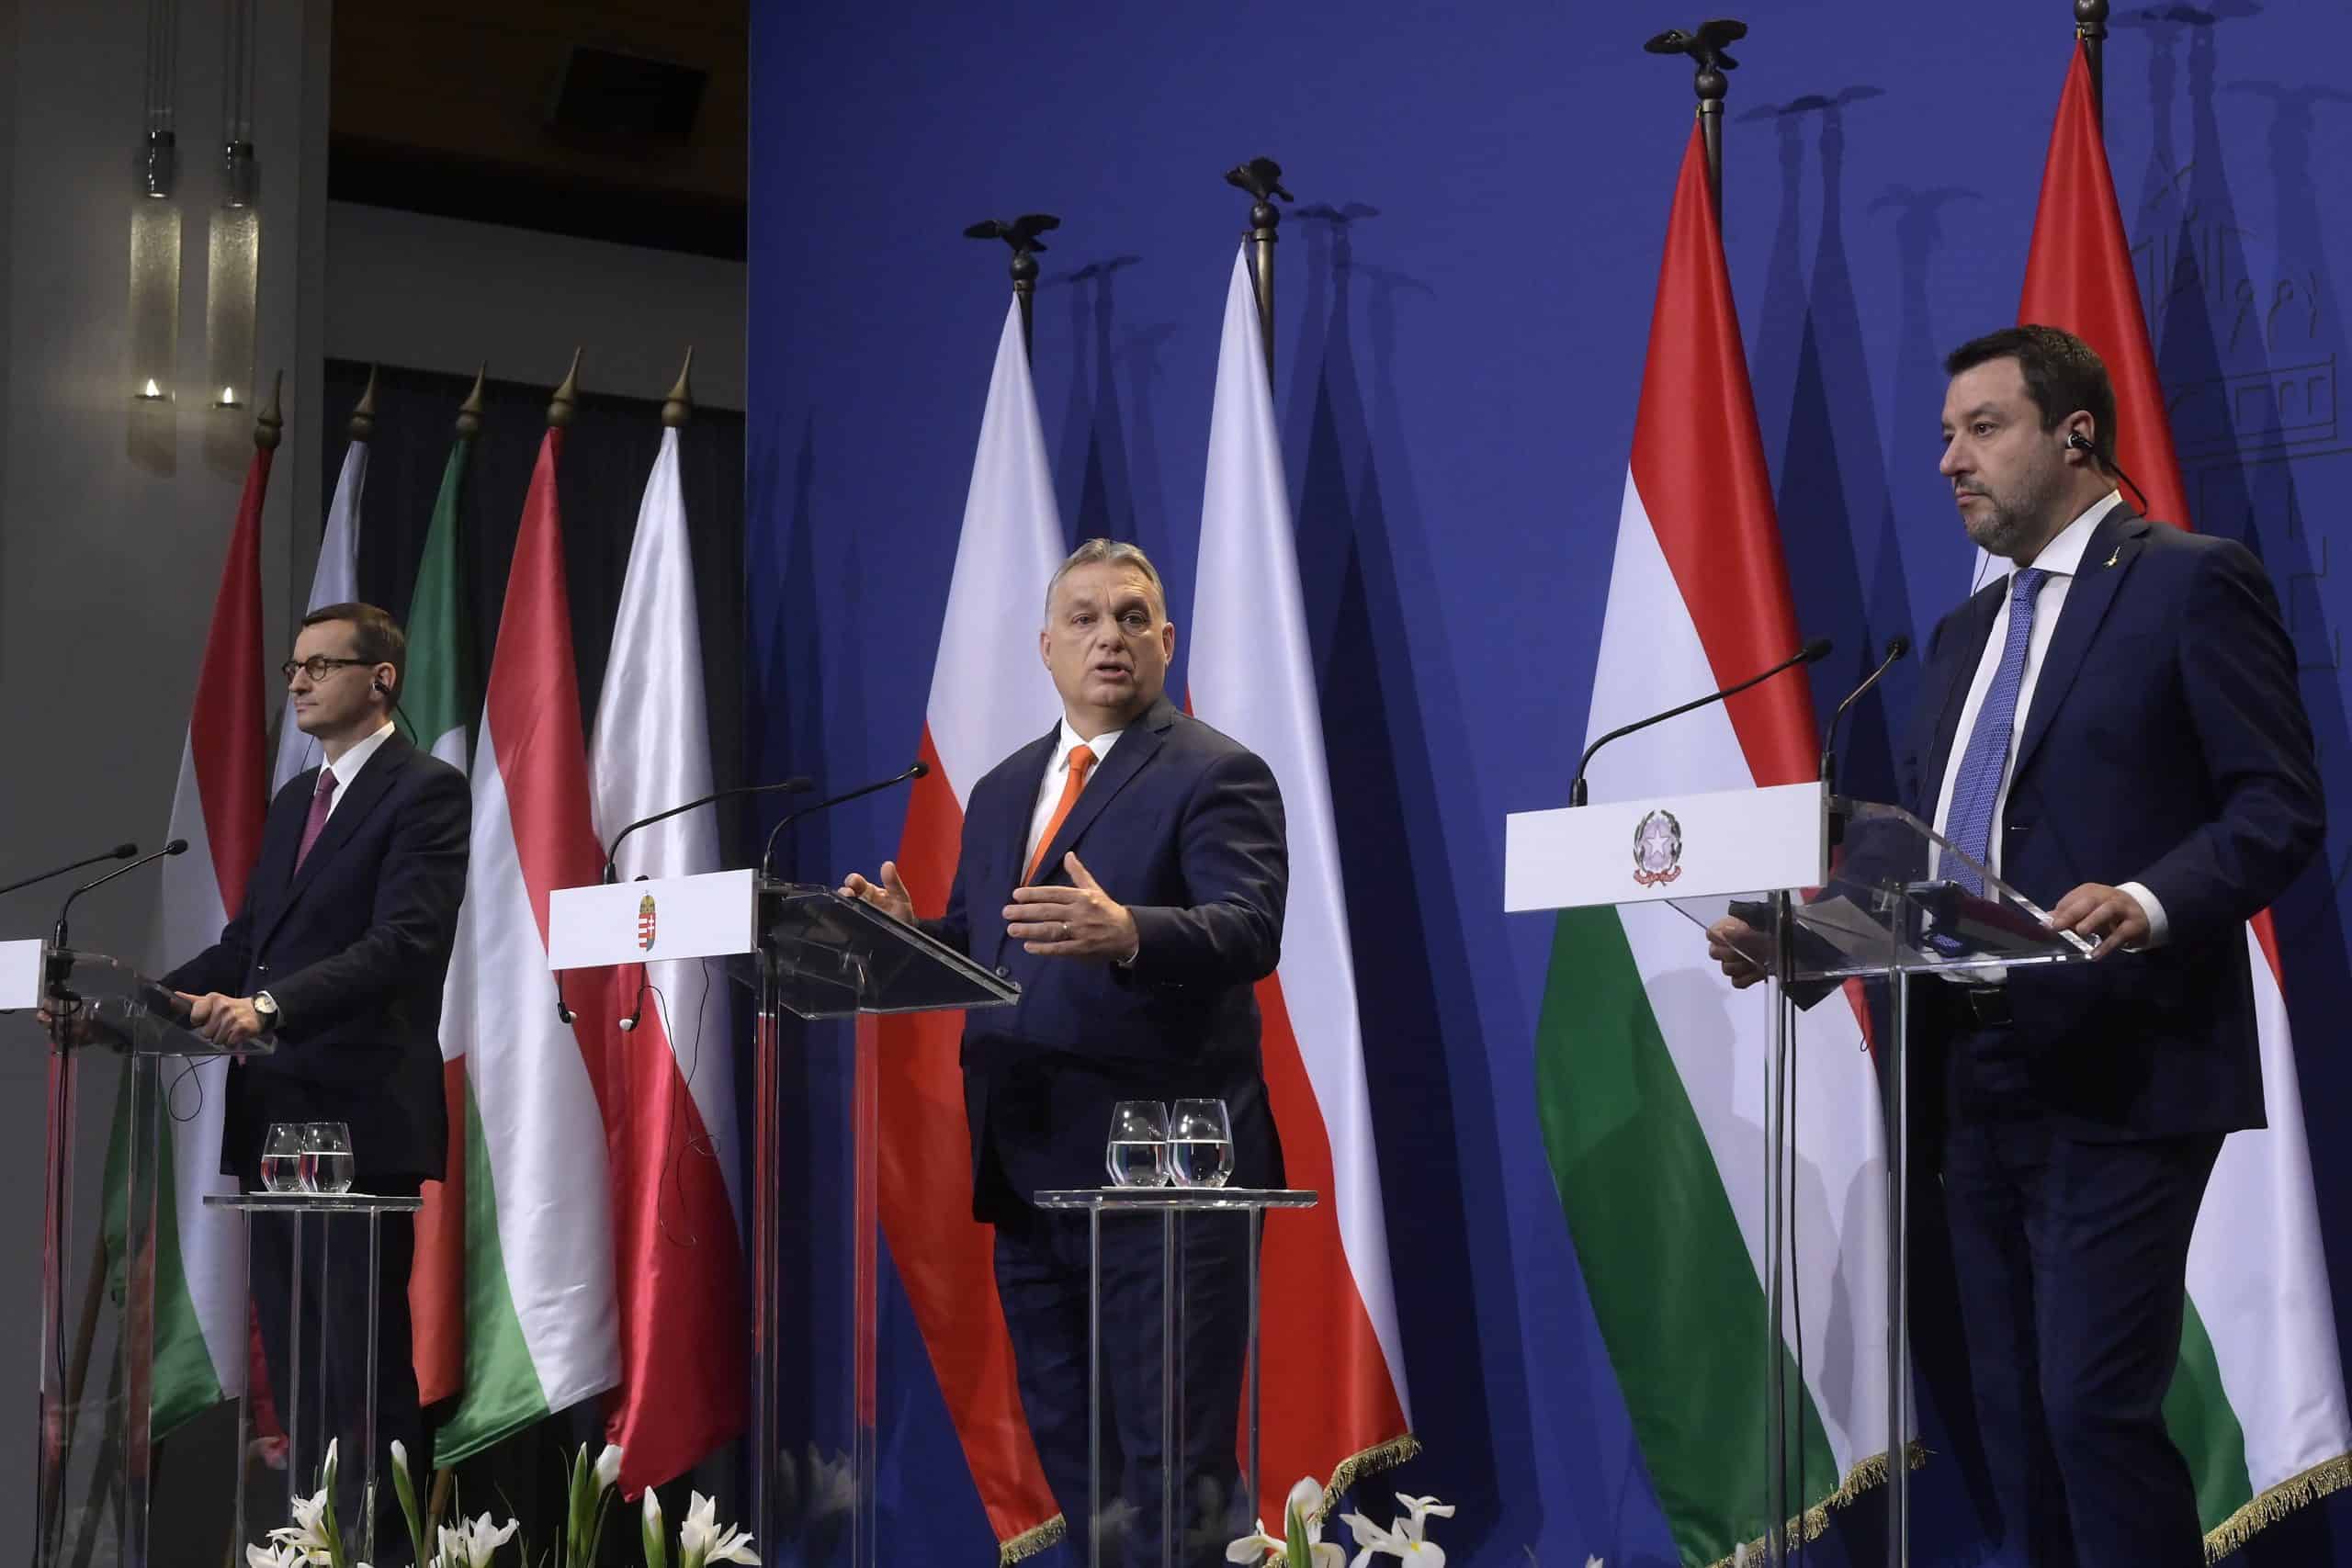 Виктор Орбан први пут наговестио могућност изласка Мађарске из Европске уније